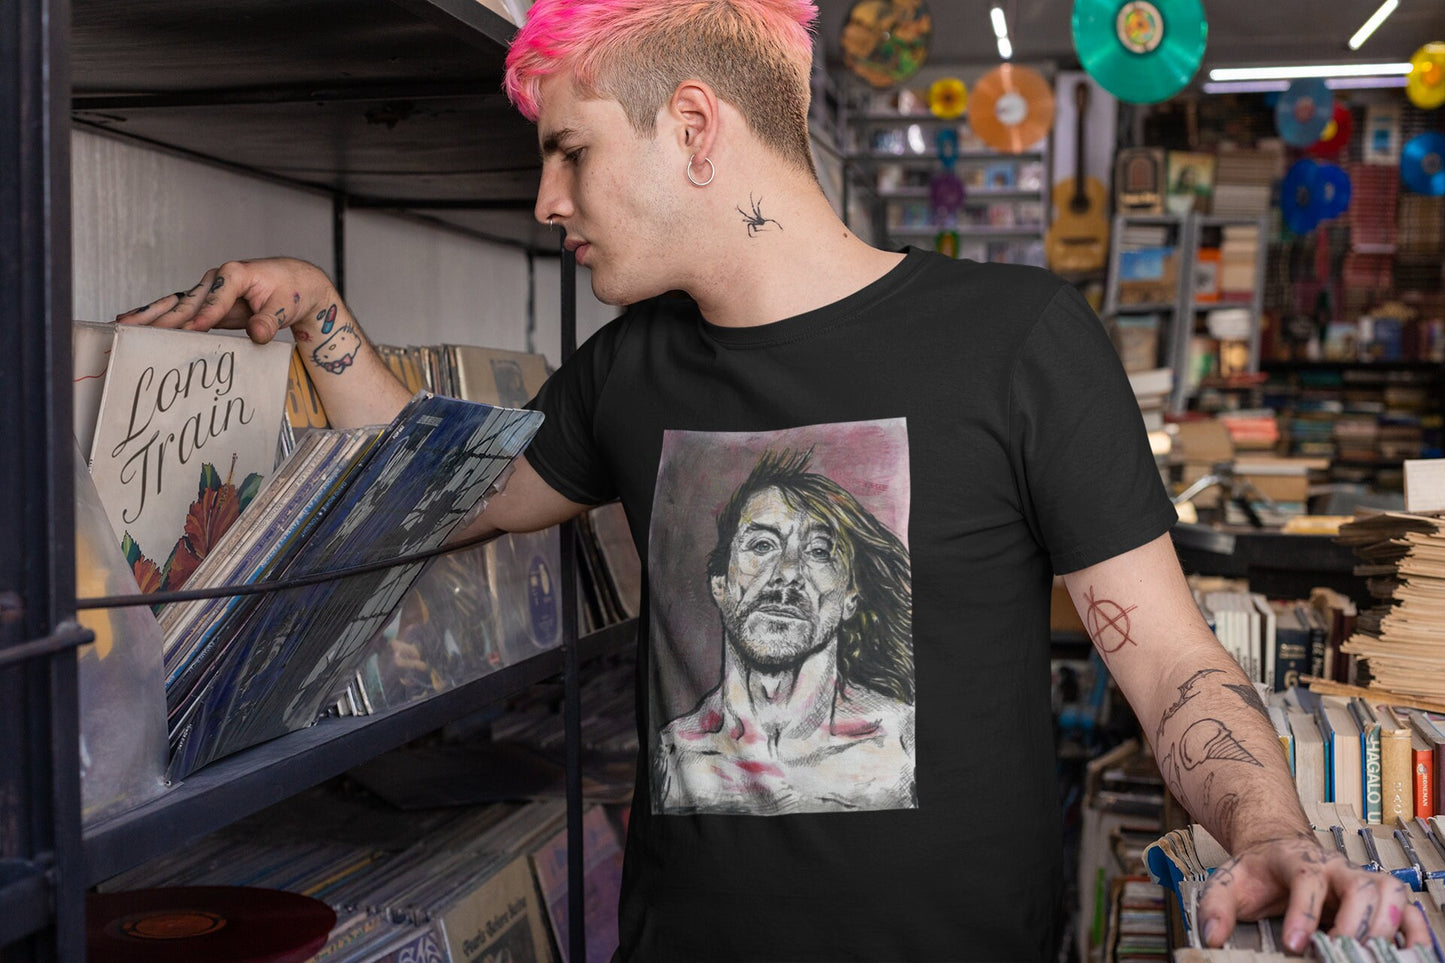 Iggy Pop T-Shirt, The Stooges merch, Punk rock t-shirt, Rock music clothing, Men's punk rock shirt, Women's Iggy Pop shirt, gift for punks